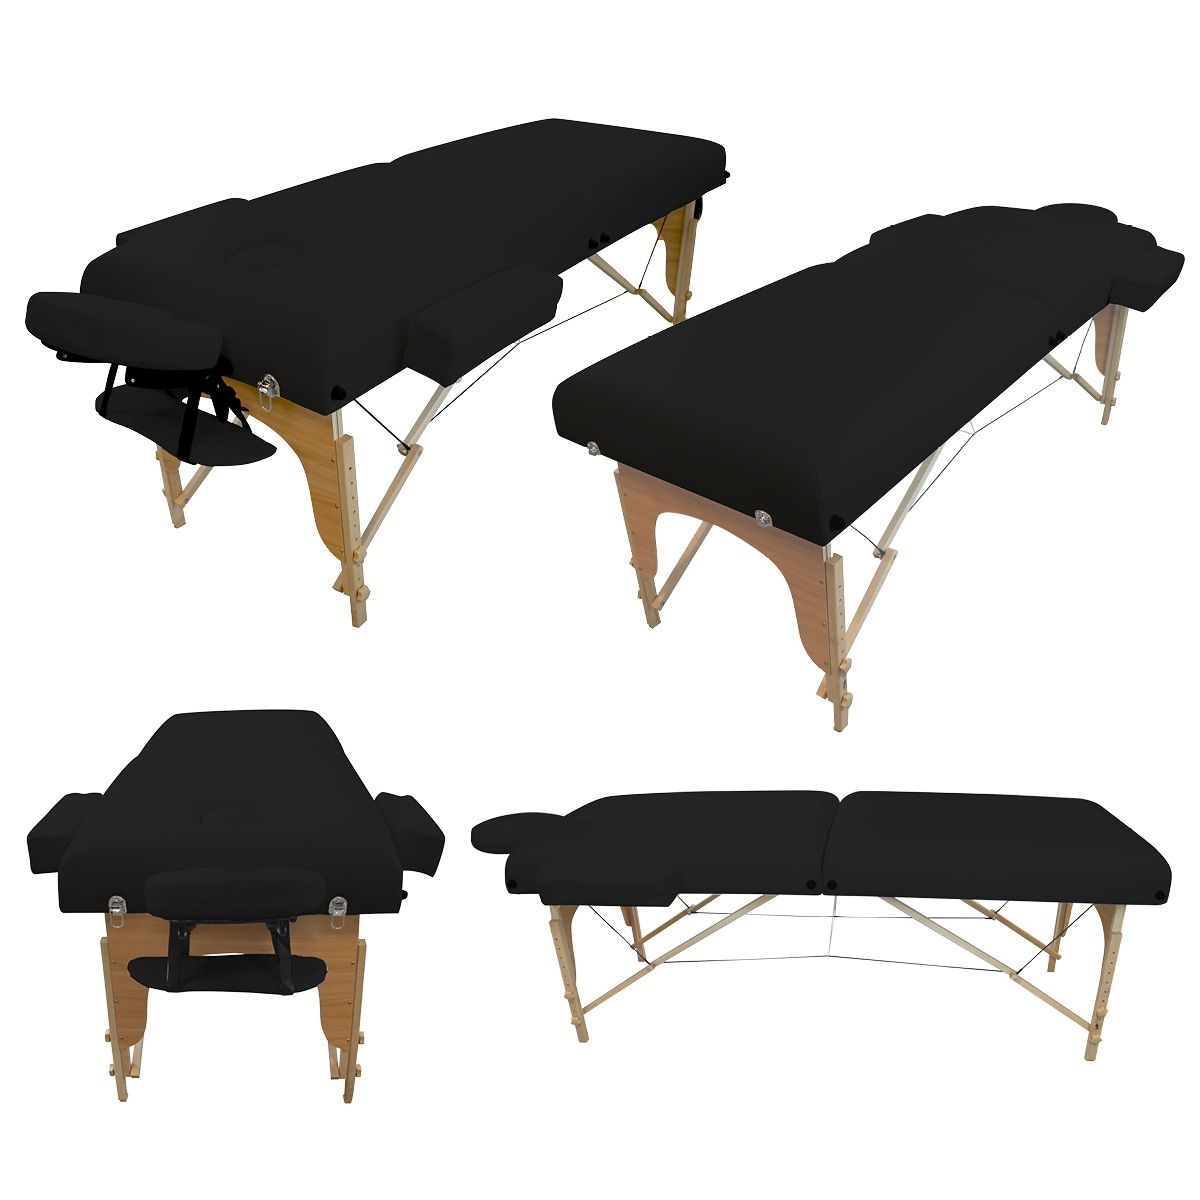 Accessoires et housse de transport Vivezen ® Table de massage pliante 2 zones en bois avec panneau Reiki 10 coloris Norme CE